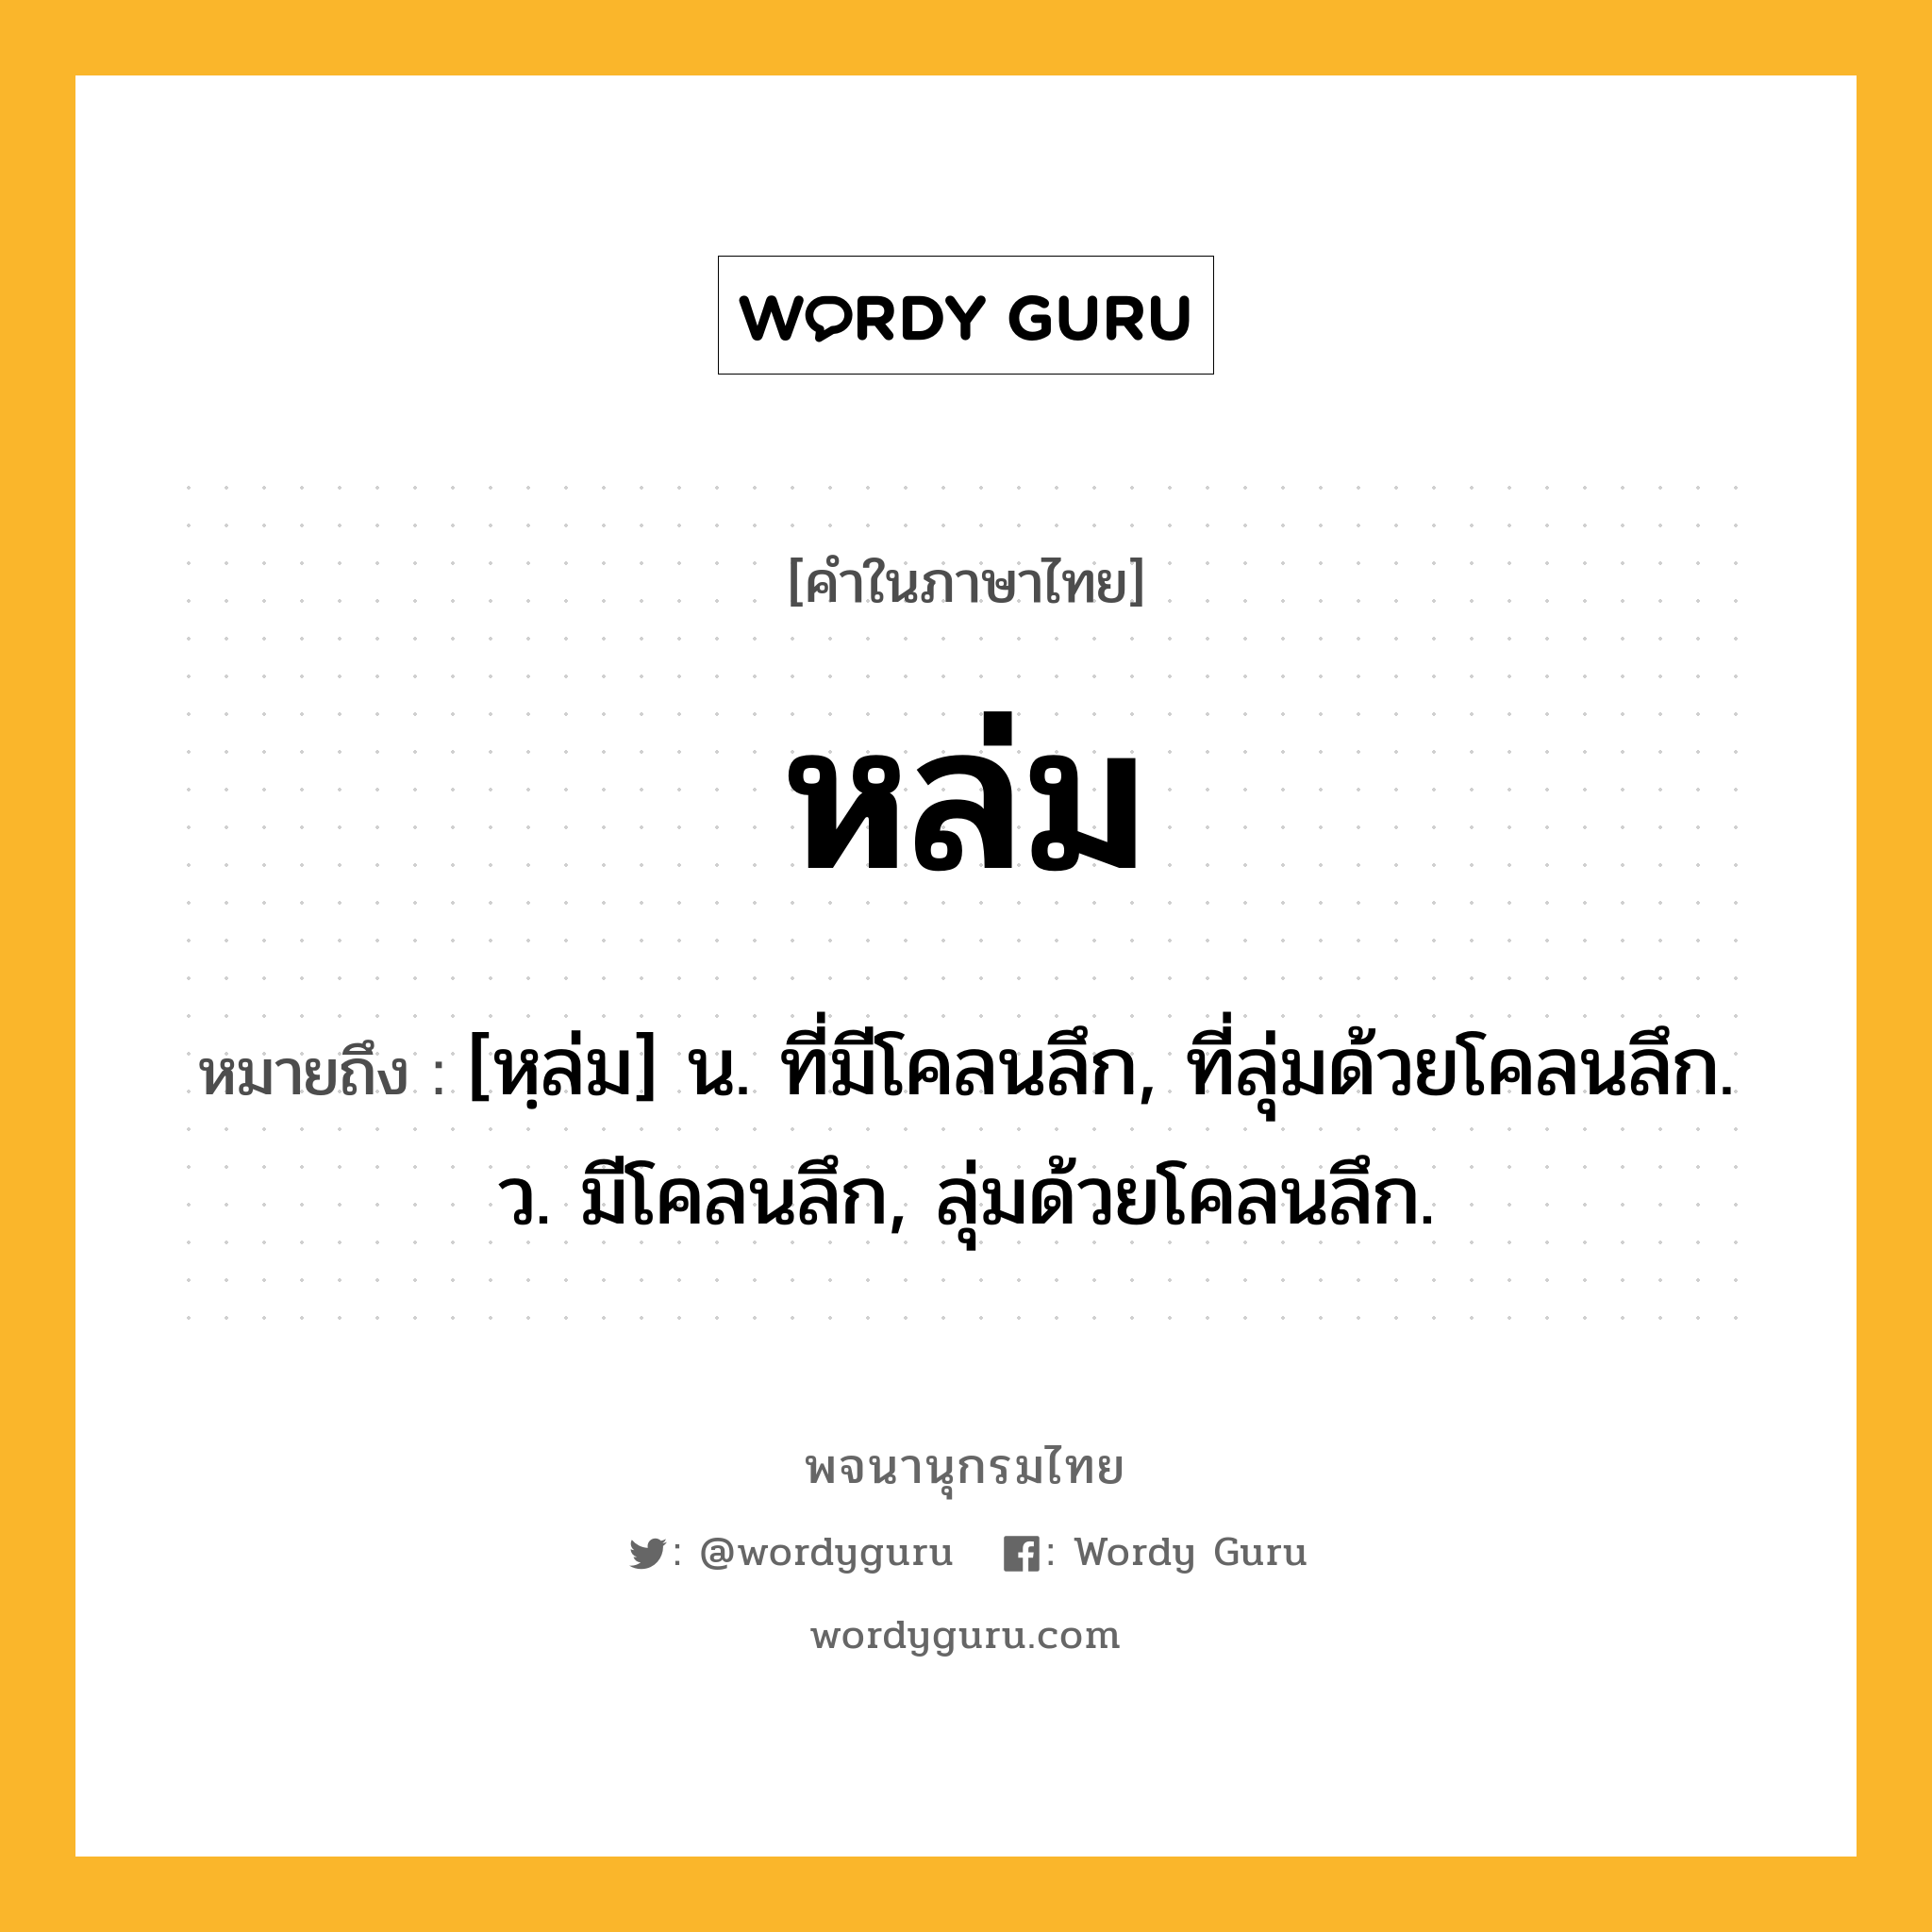 หล่ม ความหมาย หมายถึงอะไร?, คำในภาษาไทย หล่ม หมายถึง [หฺล่ม] น. ที่มีโคลนลึก, ที่ลุ่มด้วยโคลนลึก. ว. มีโคลนลึก, ลุ่มด้วยโคลนลึก.